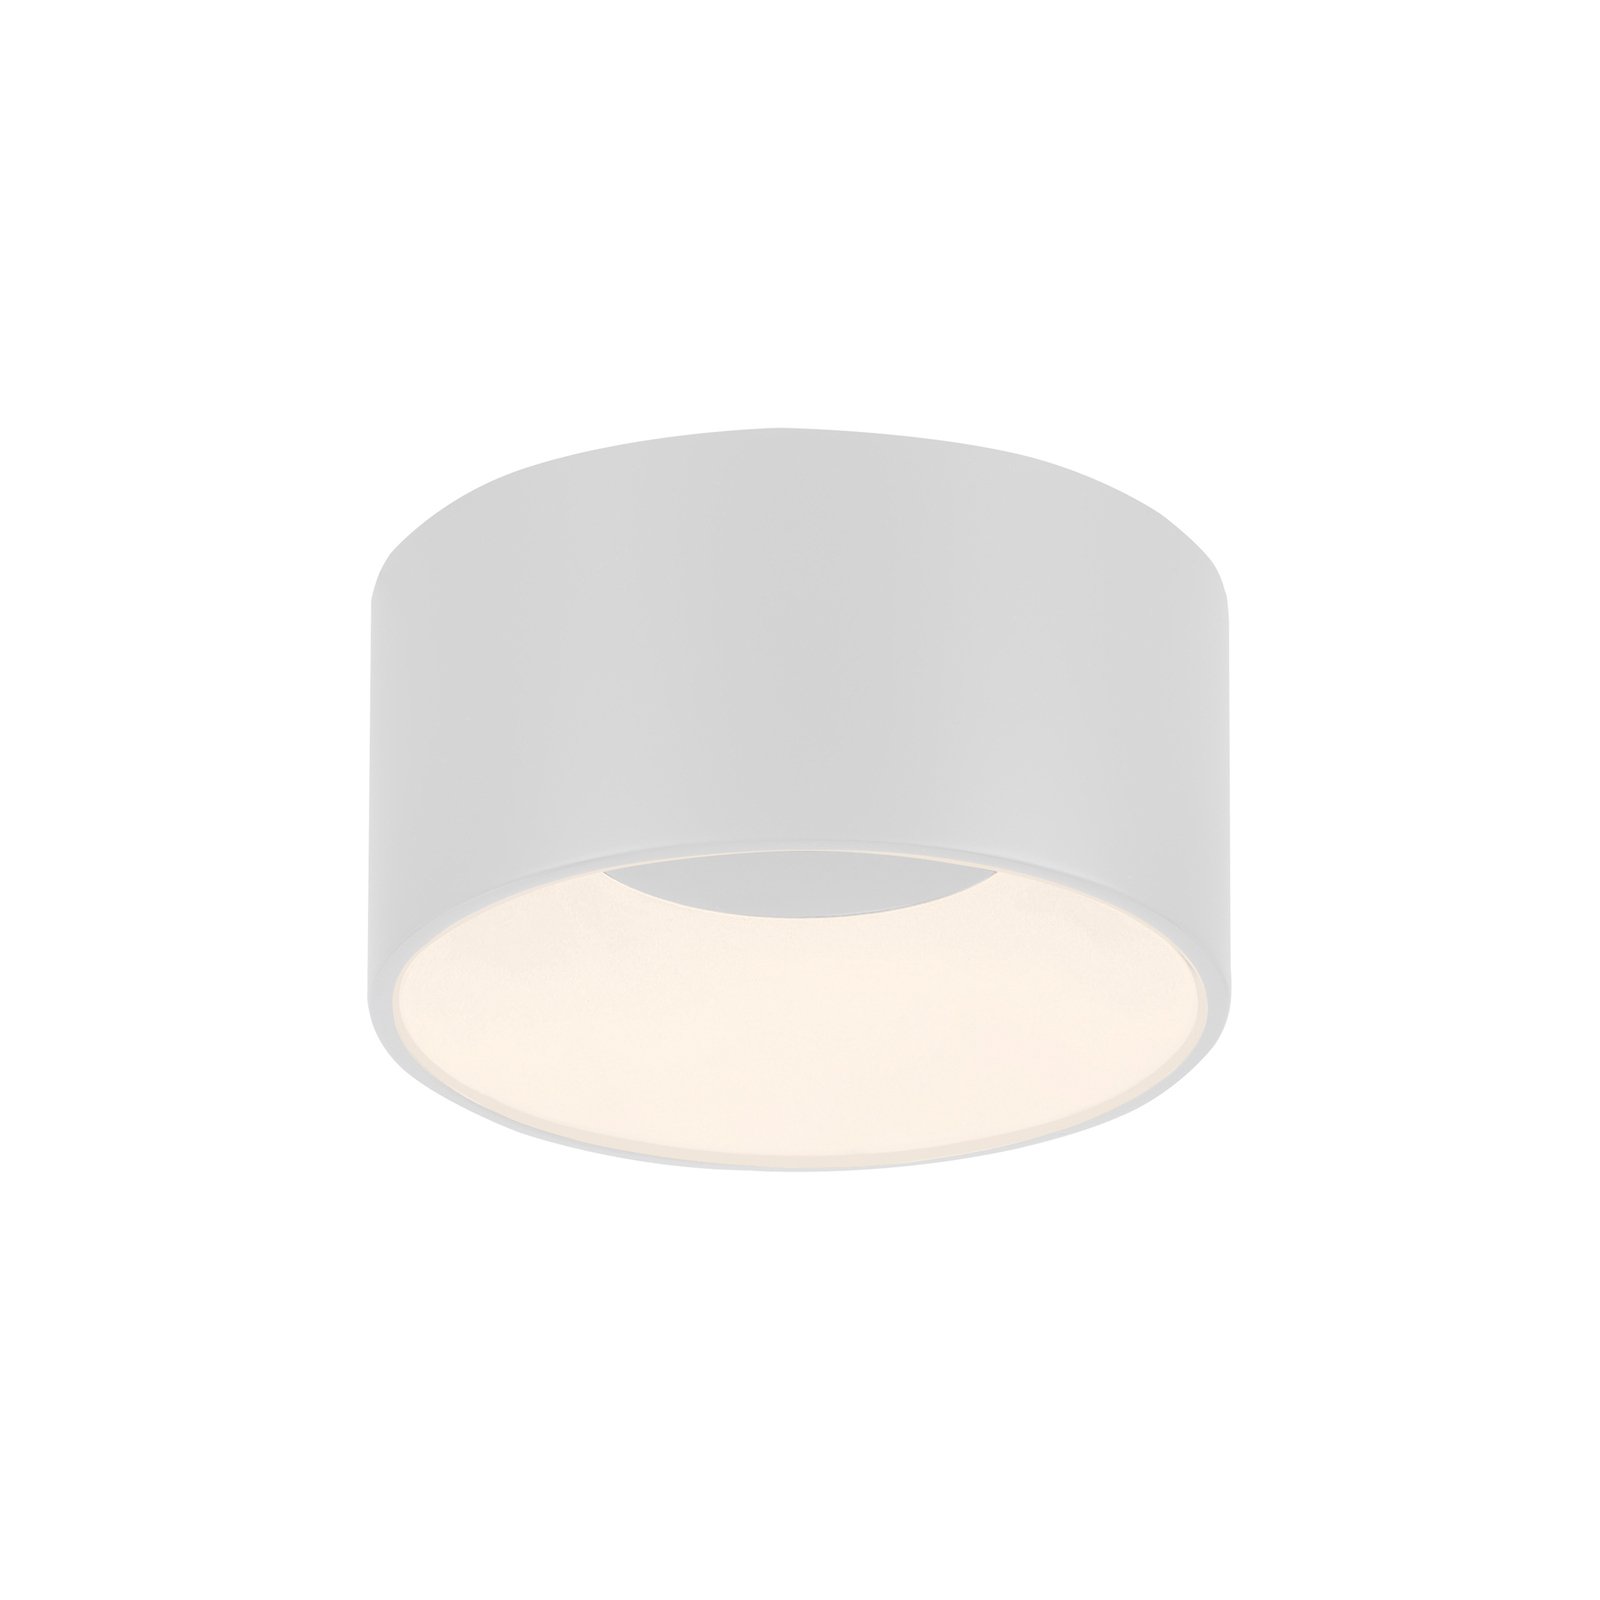 JUST LIGHT. "Tanika" LED lubinis šviestuvas, baltas, Ø 16 cm,